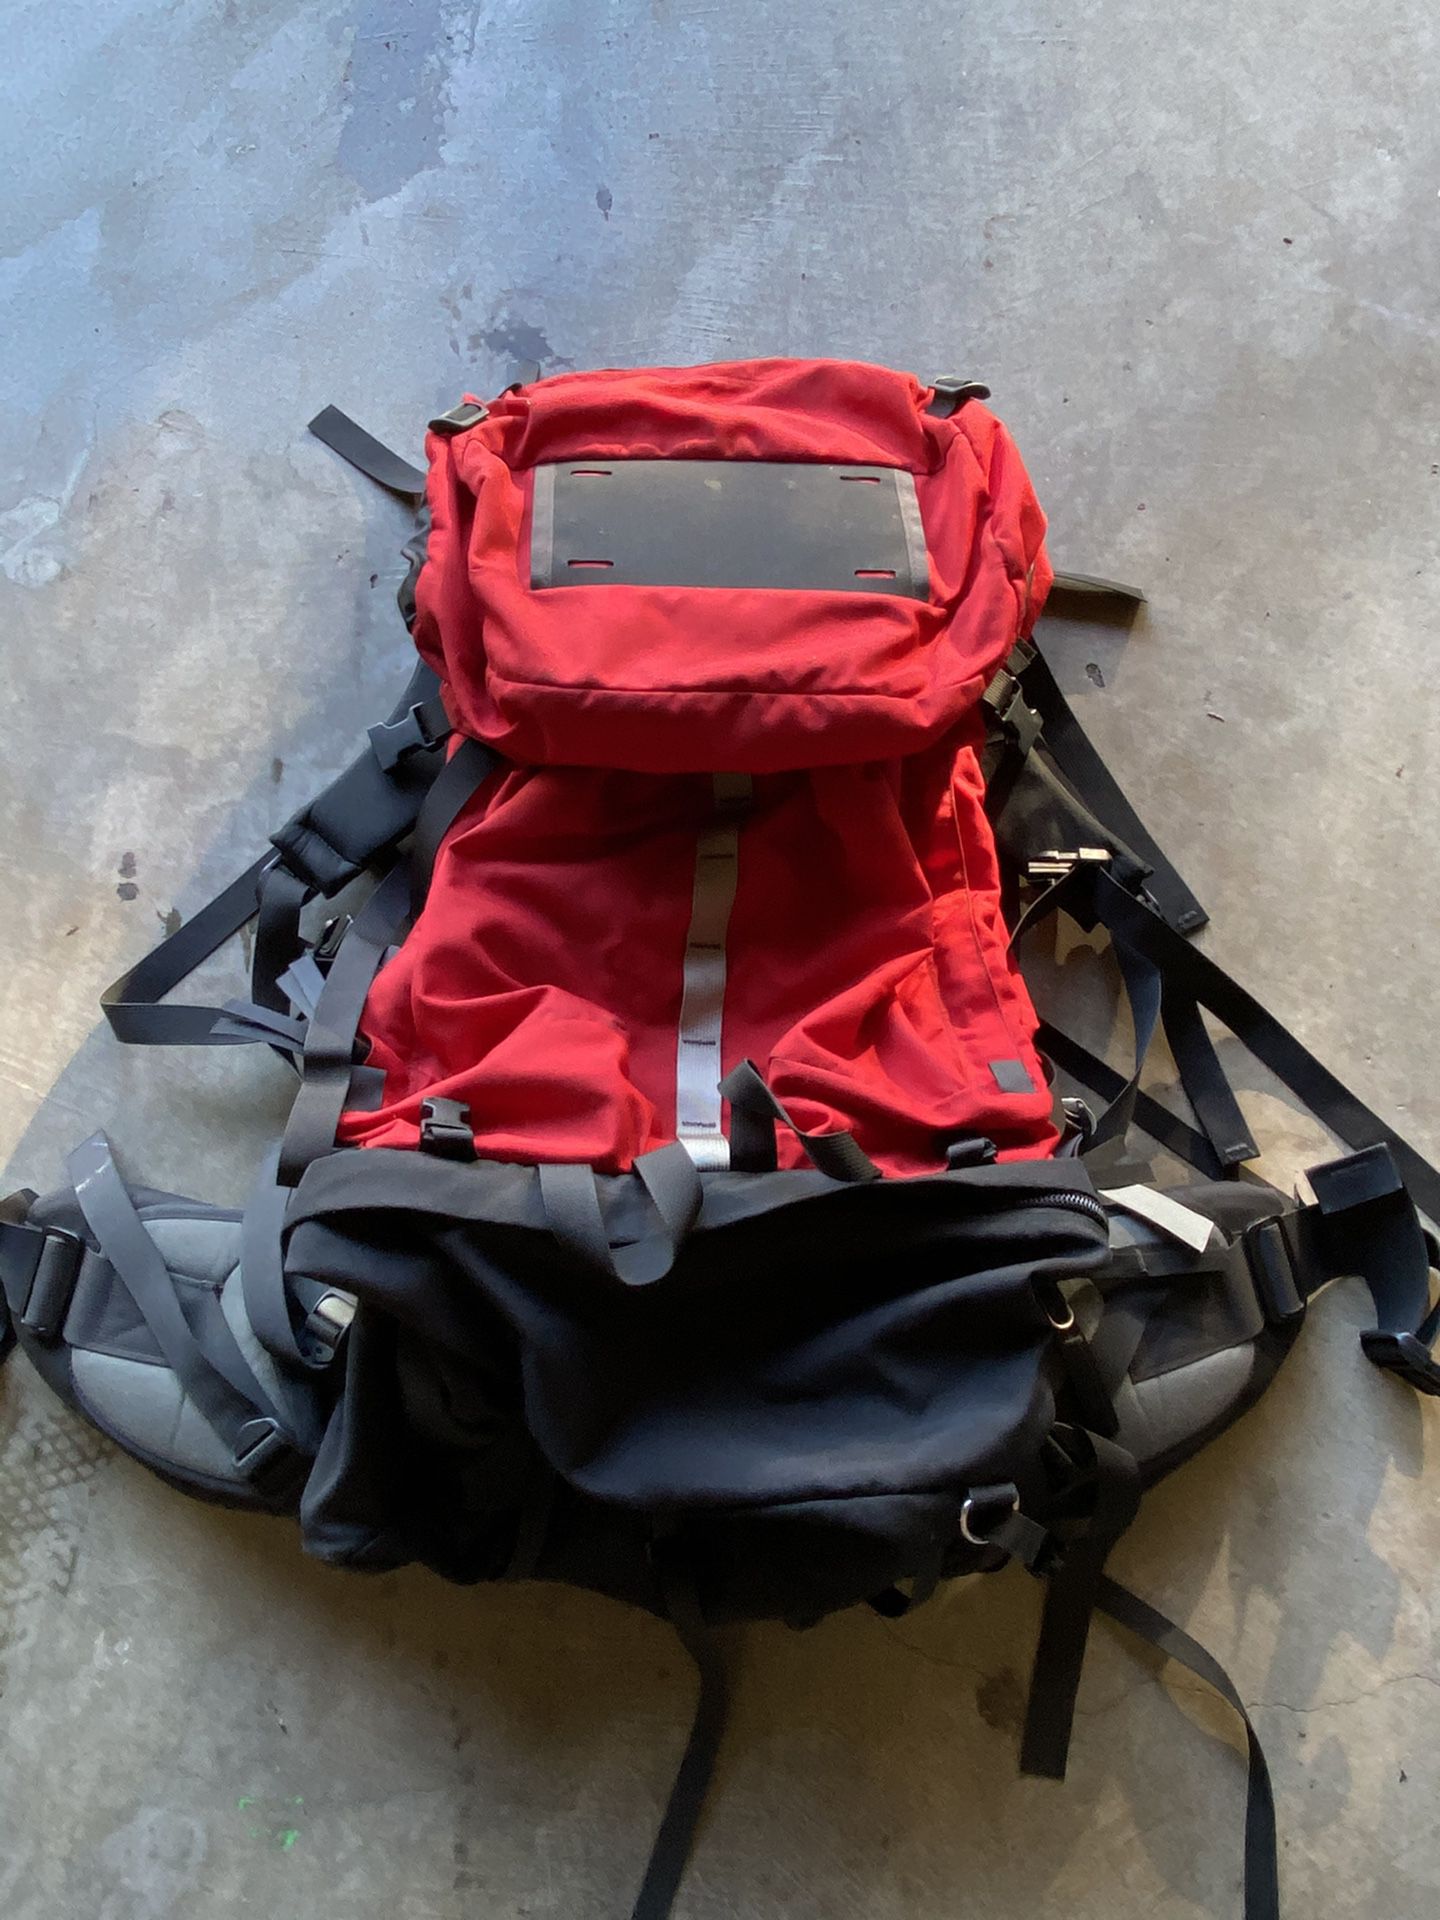 Dana designs hiking backpack